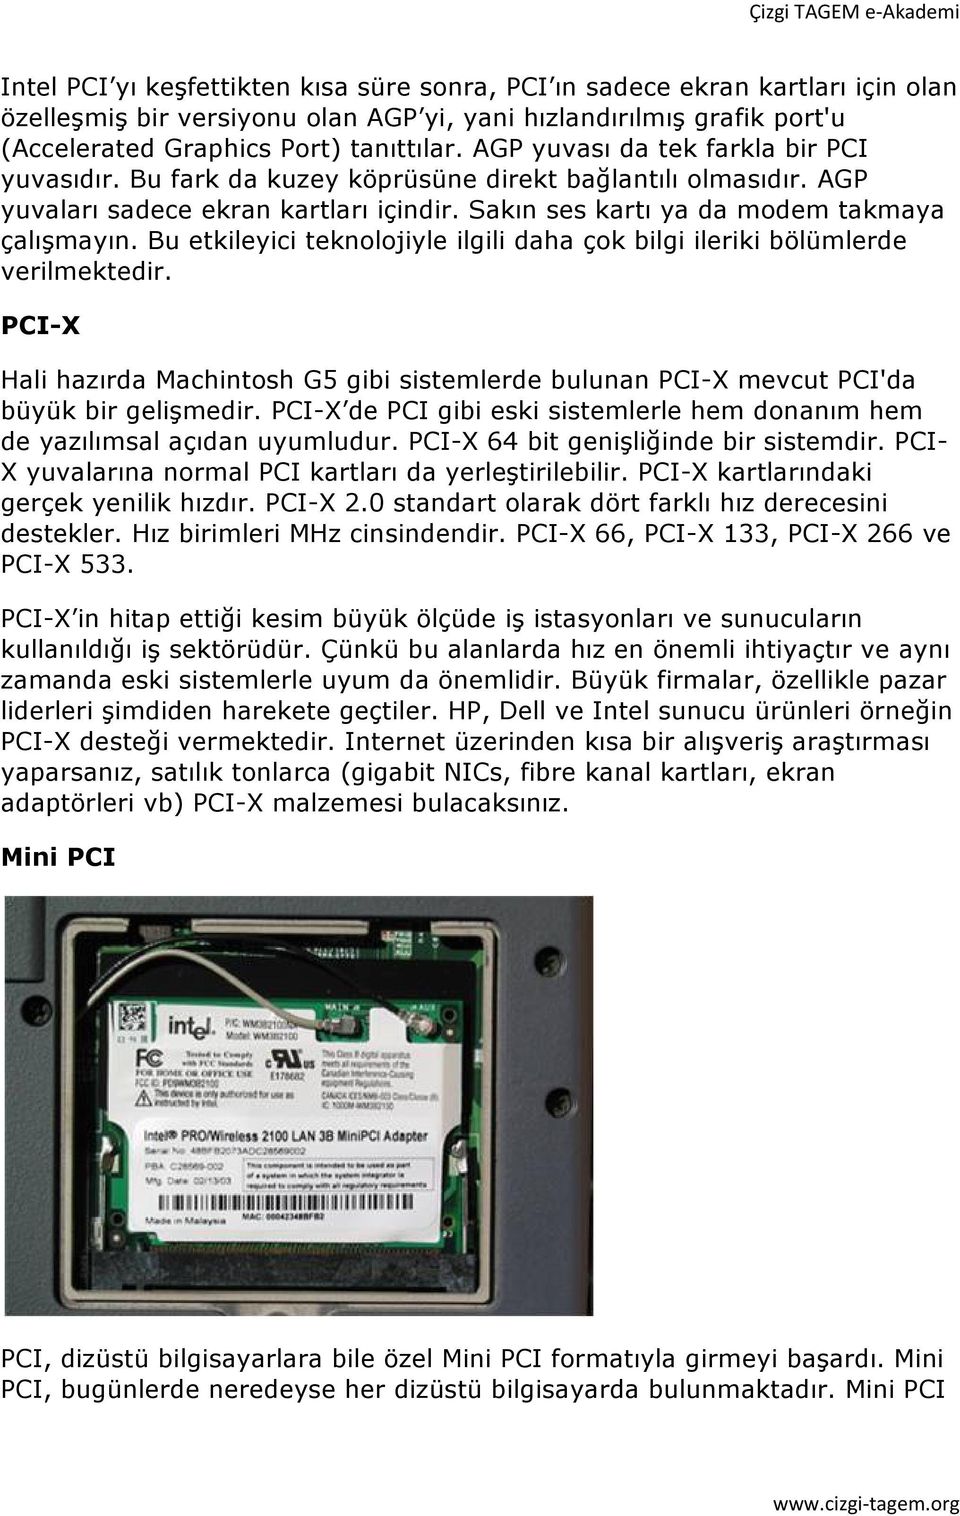 Bu etkileyici teknolojiyle ilgili daha çok bilgi ileriki bölümlerde verilmektedir. PCI-X Hali hazırda Machintosh G5 gibi sistemlerde bulunan PCI-X mevcut PCI'da büyük bir gelişmedir.